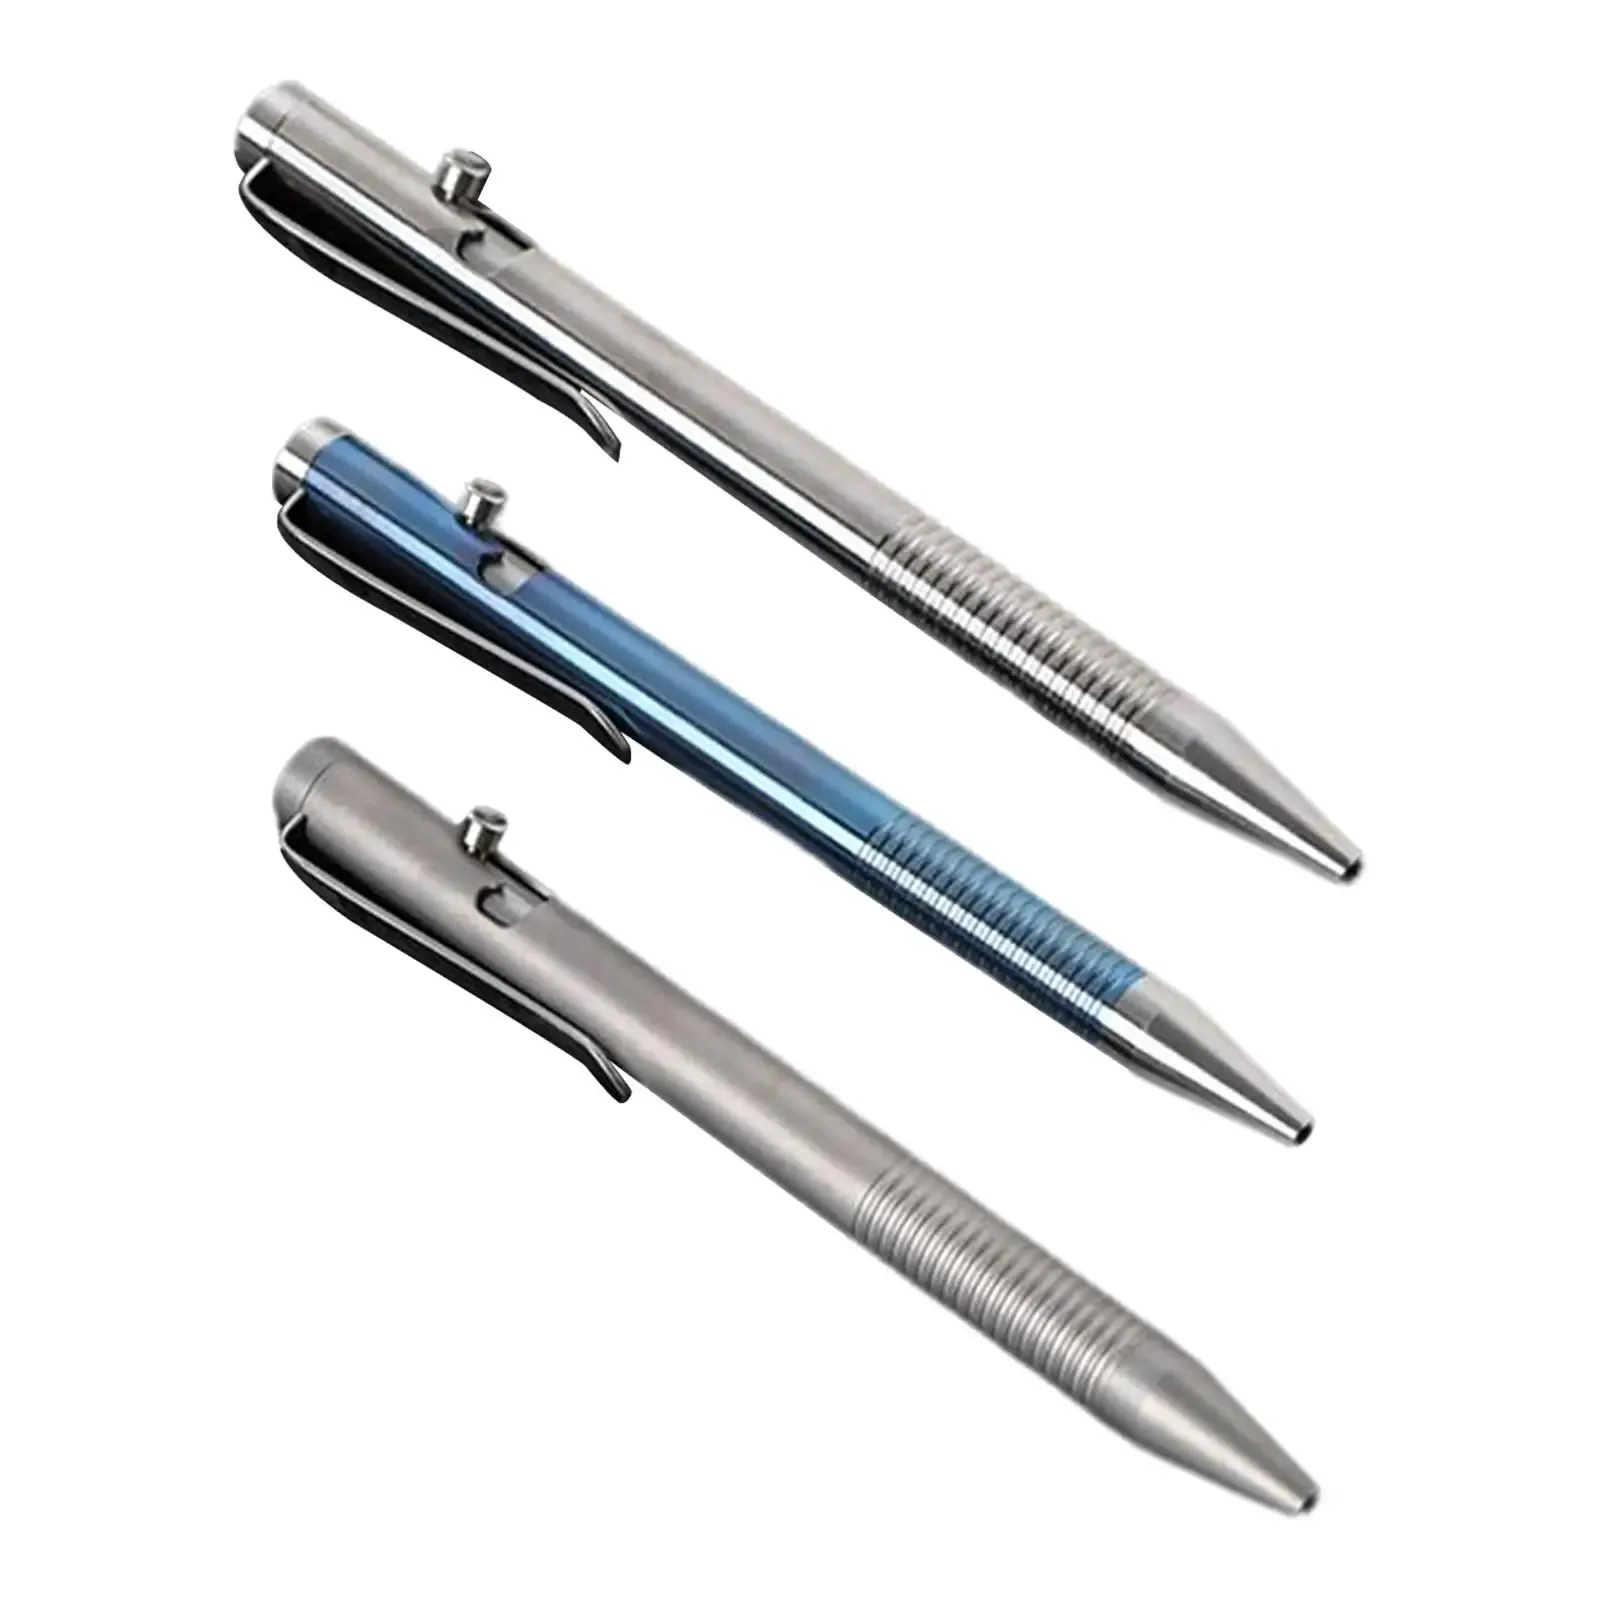 Pensje nowość Bolt Action Pen Titanium Stop 0,5 mm Point Portable Pocket Penfball Pen Pen Pen Pen Pen do codziennego użycia